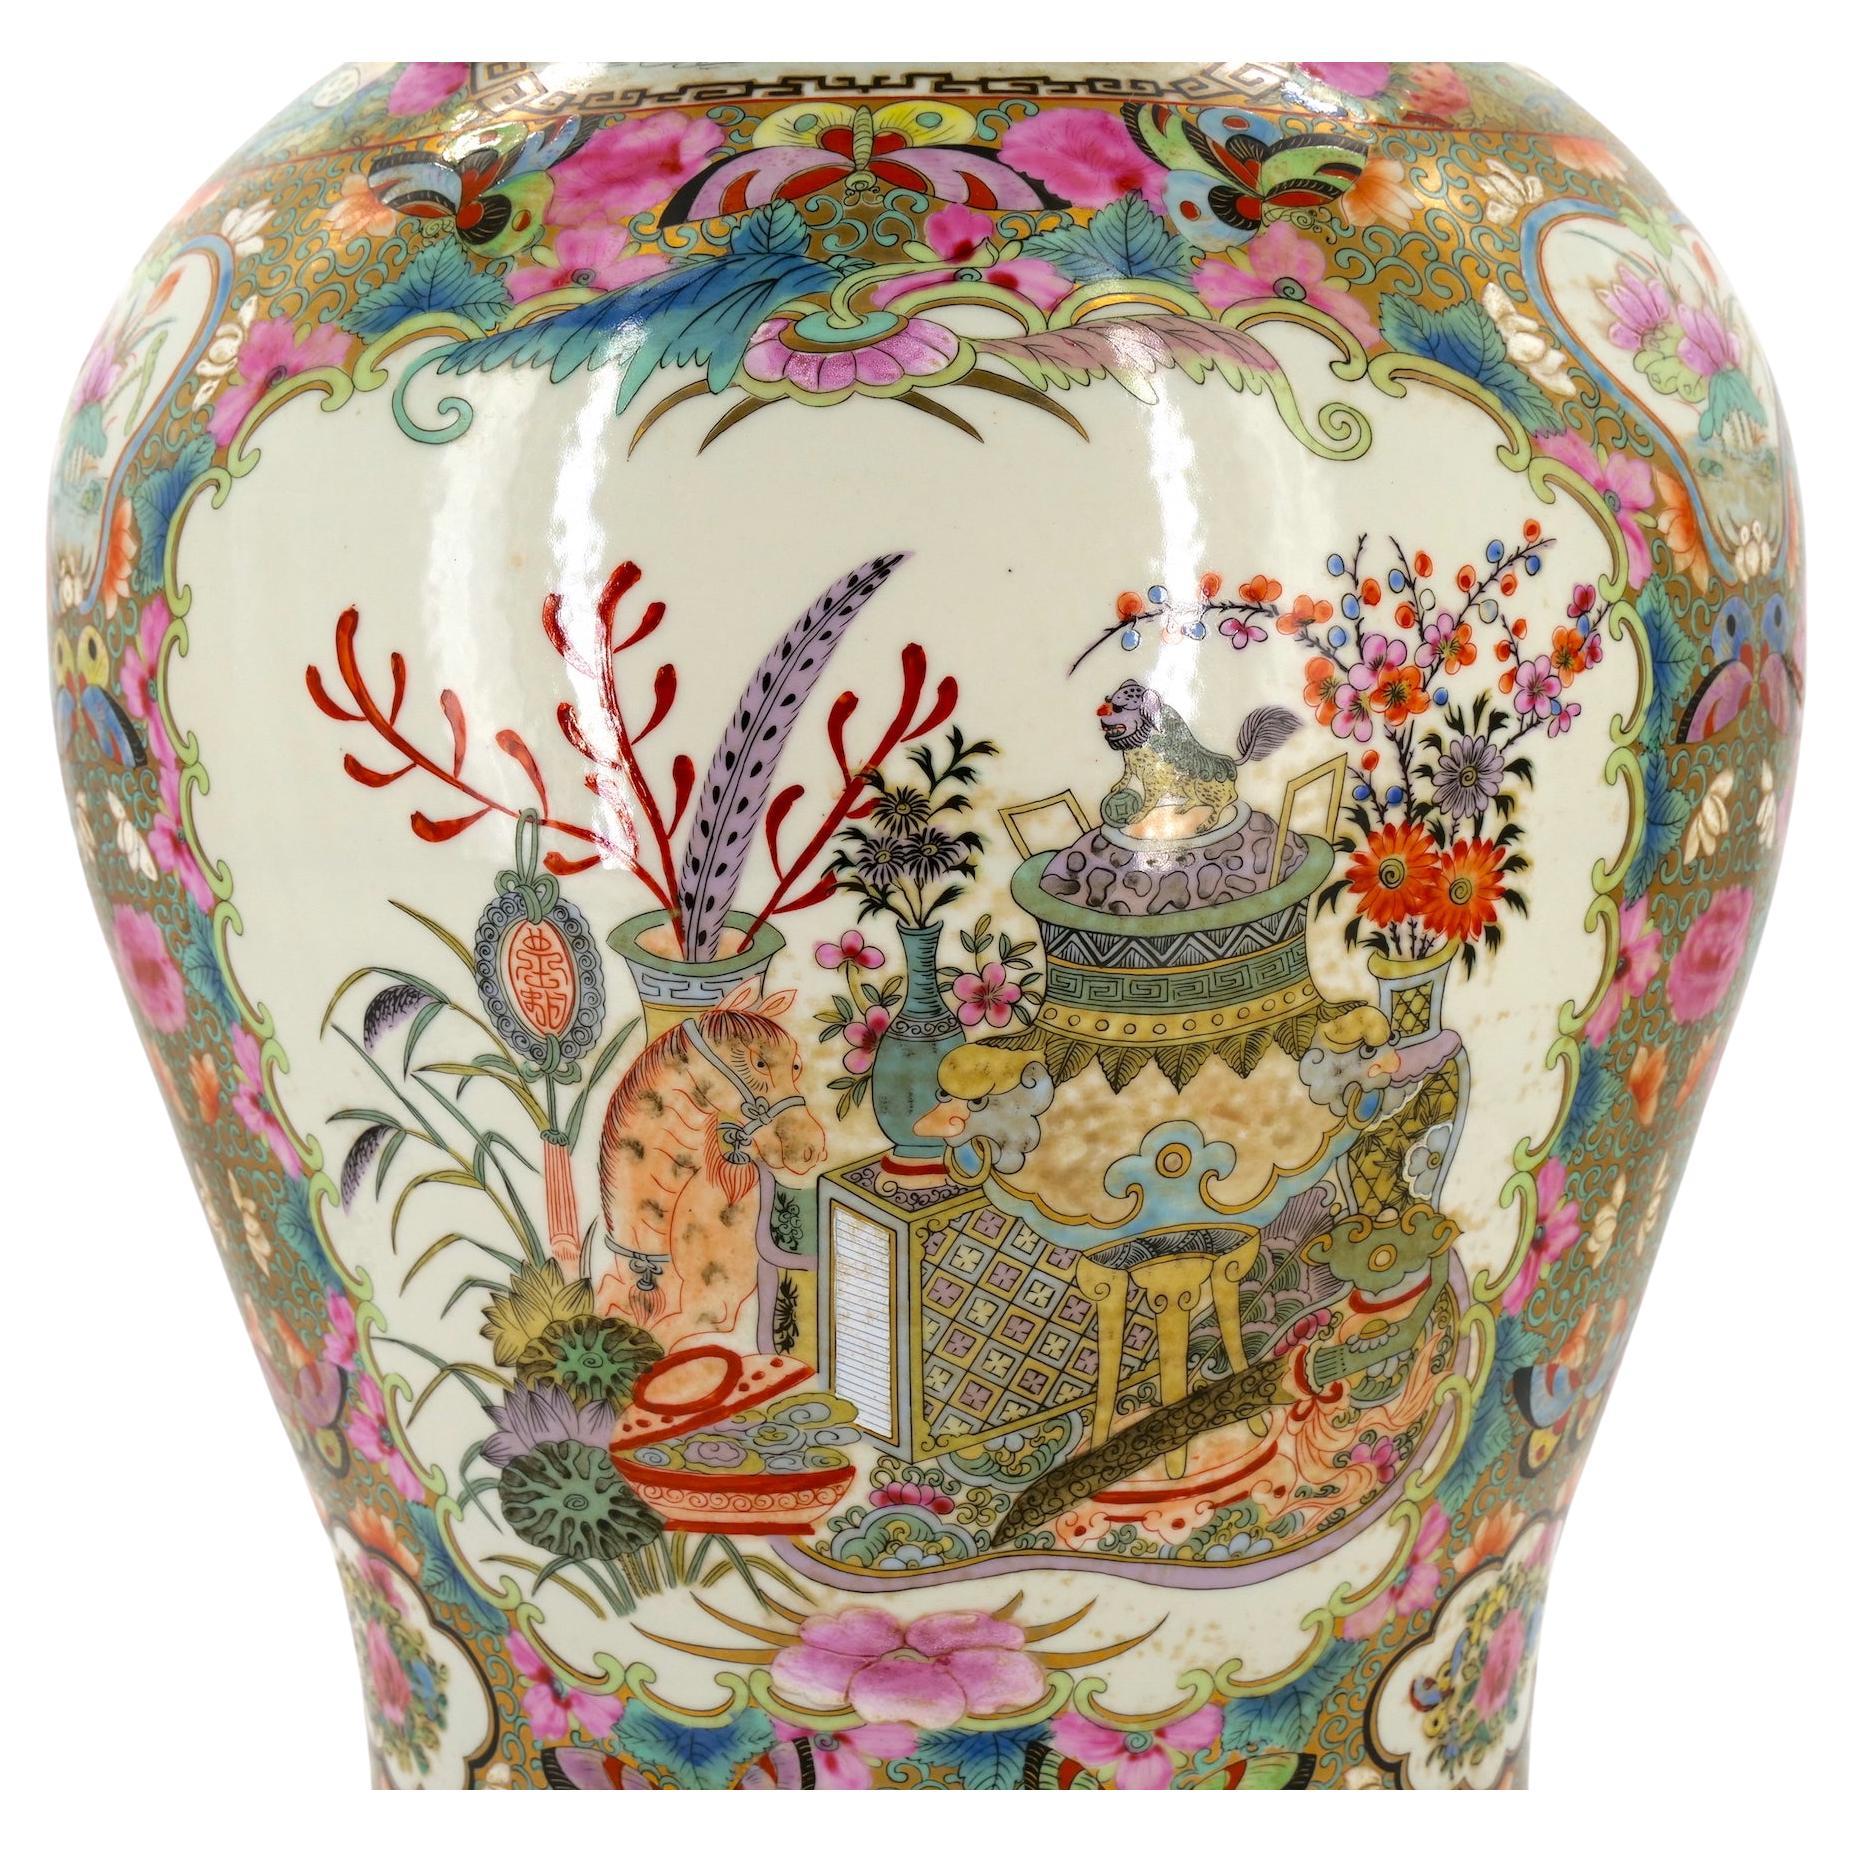 decorative urns and jars